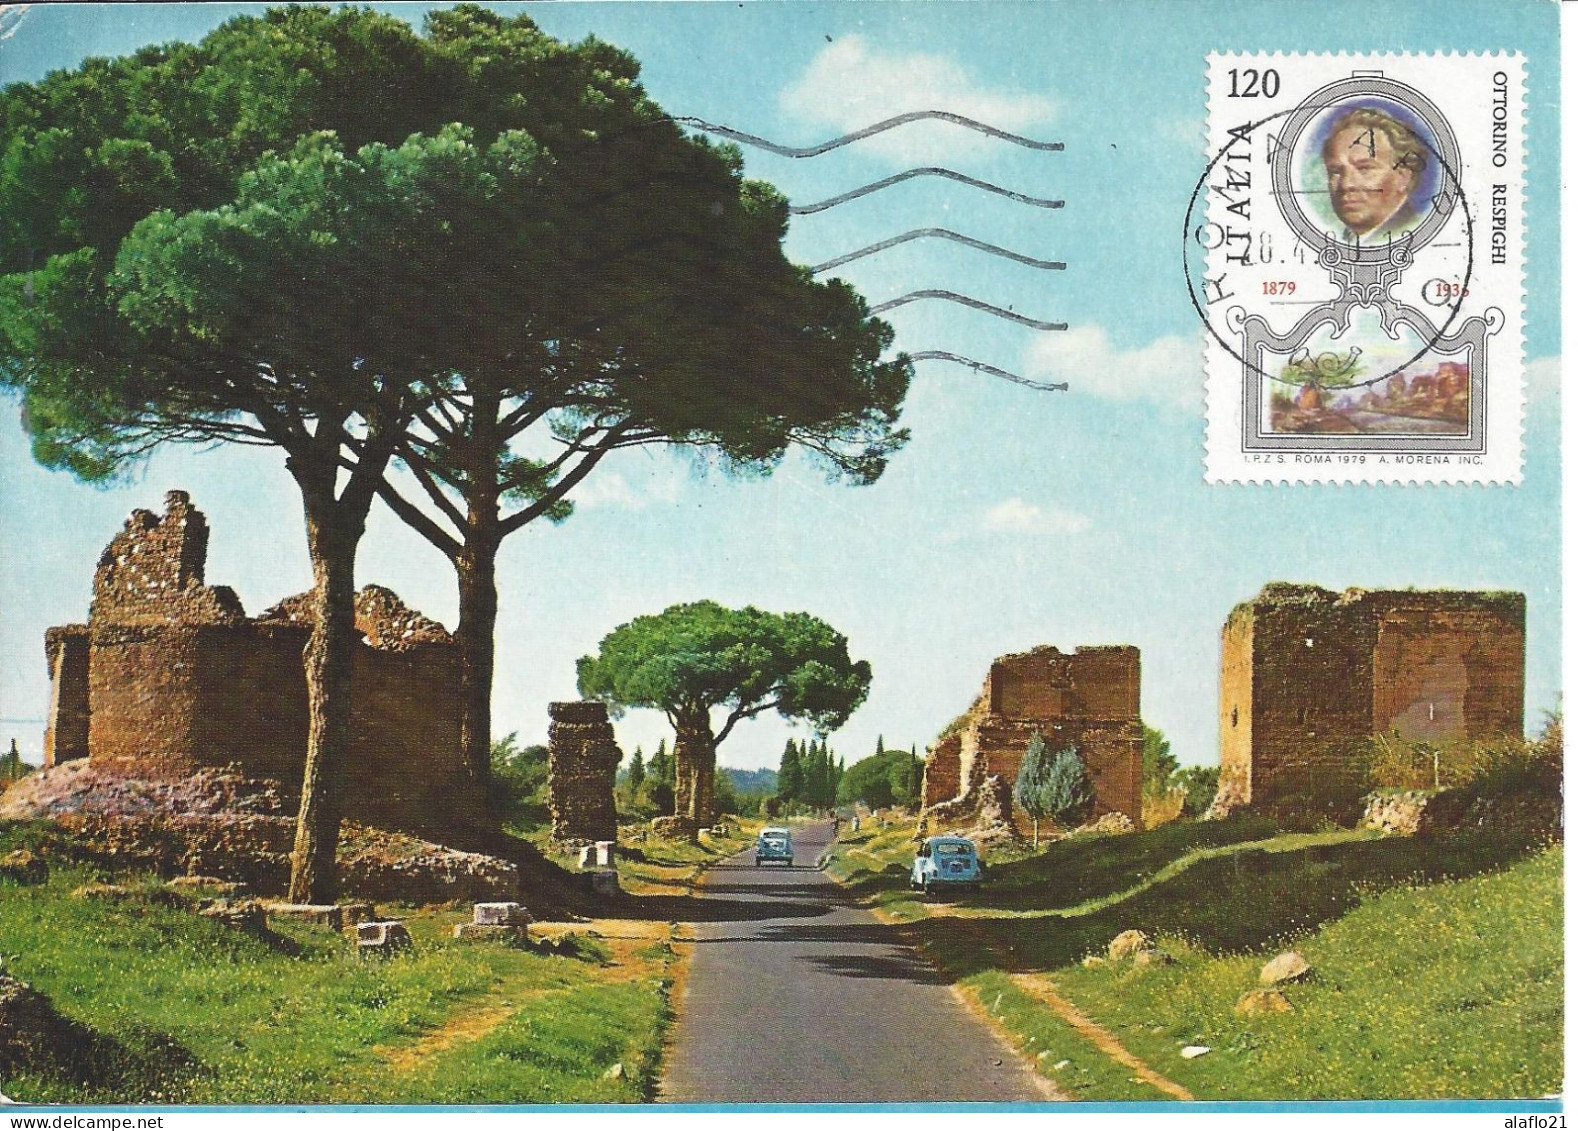 ITALIE - CARTE MAXIMUM - Yvert N° 1399 - VOIE APPIA Et PORTRAIT D'OTTORINO RESPIGHI (2) - Maximum Cards